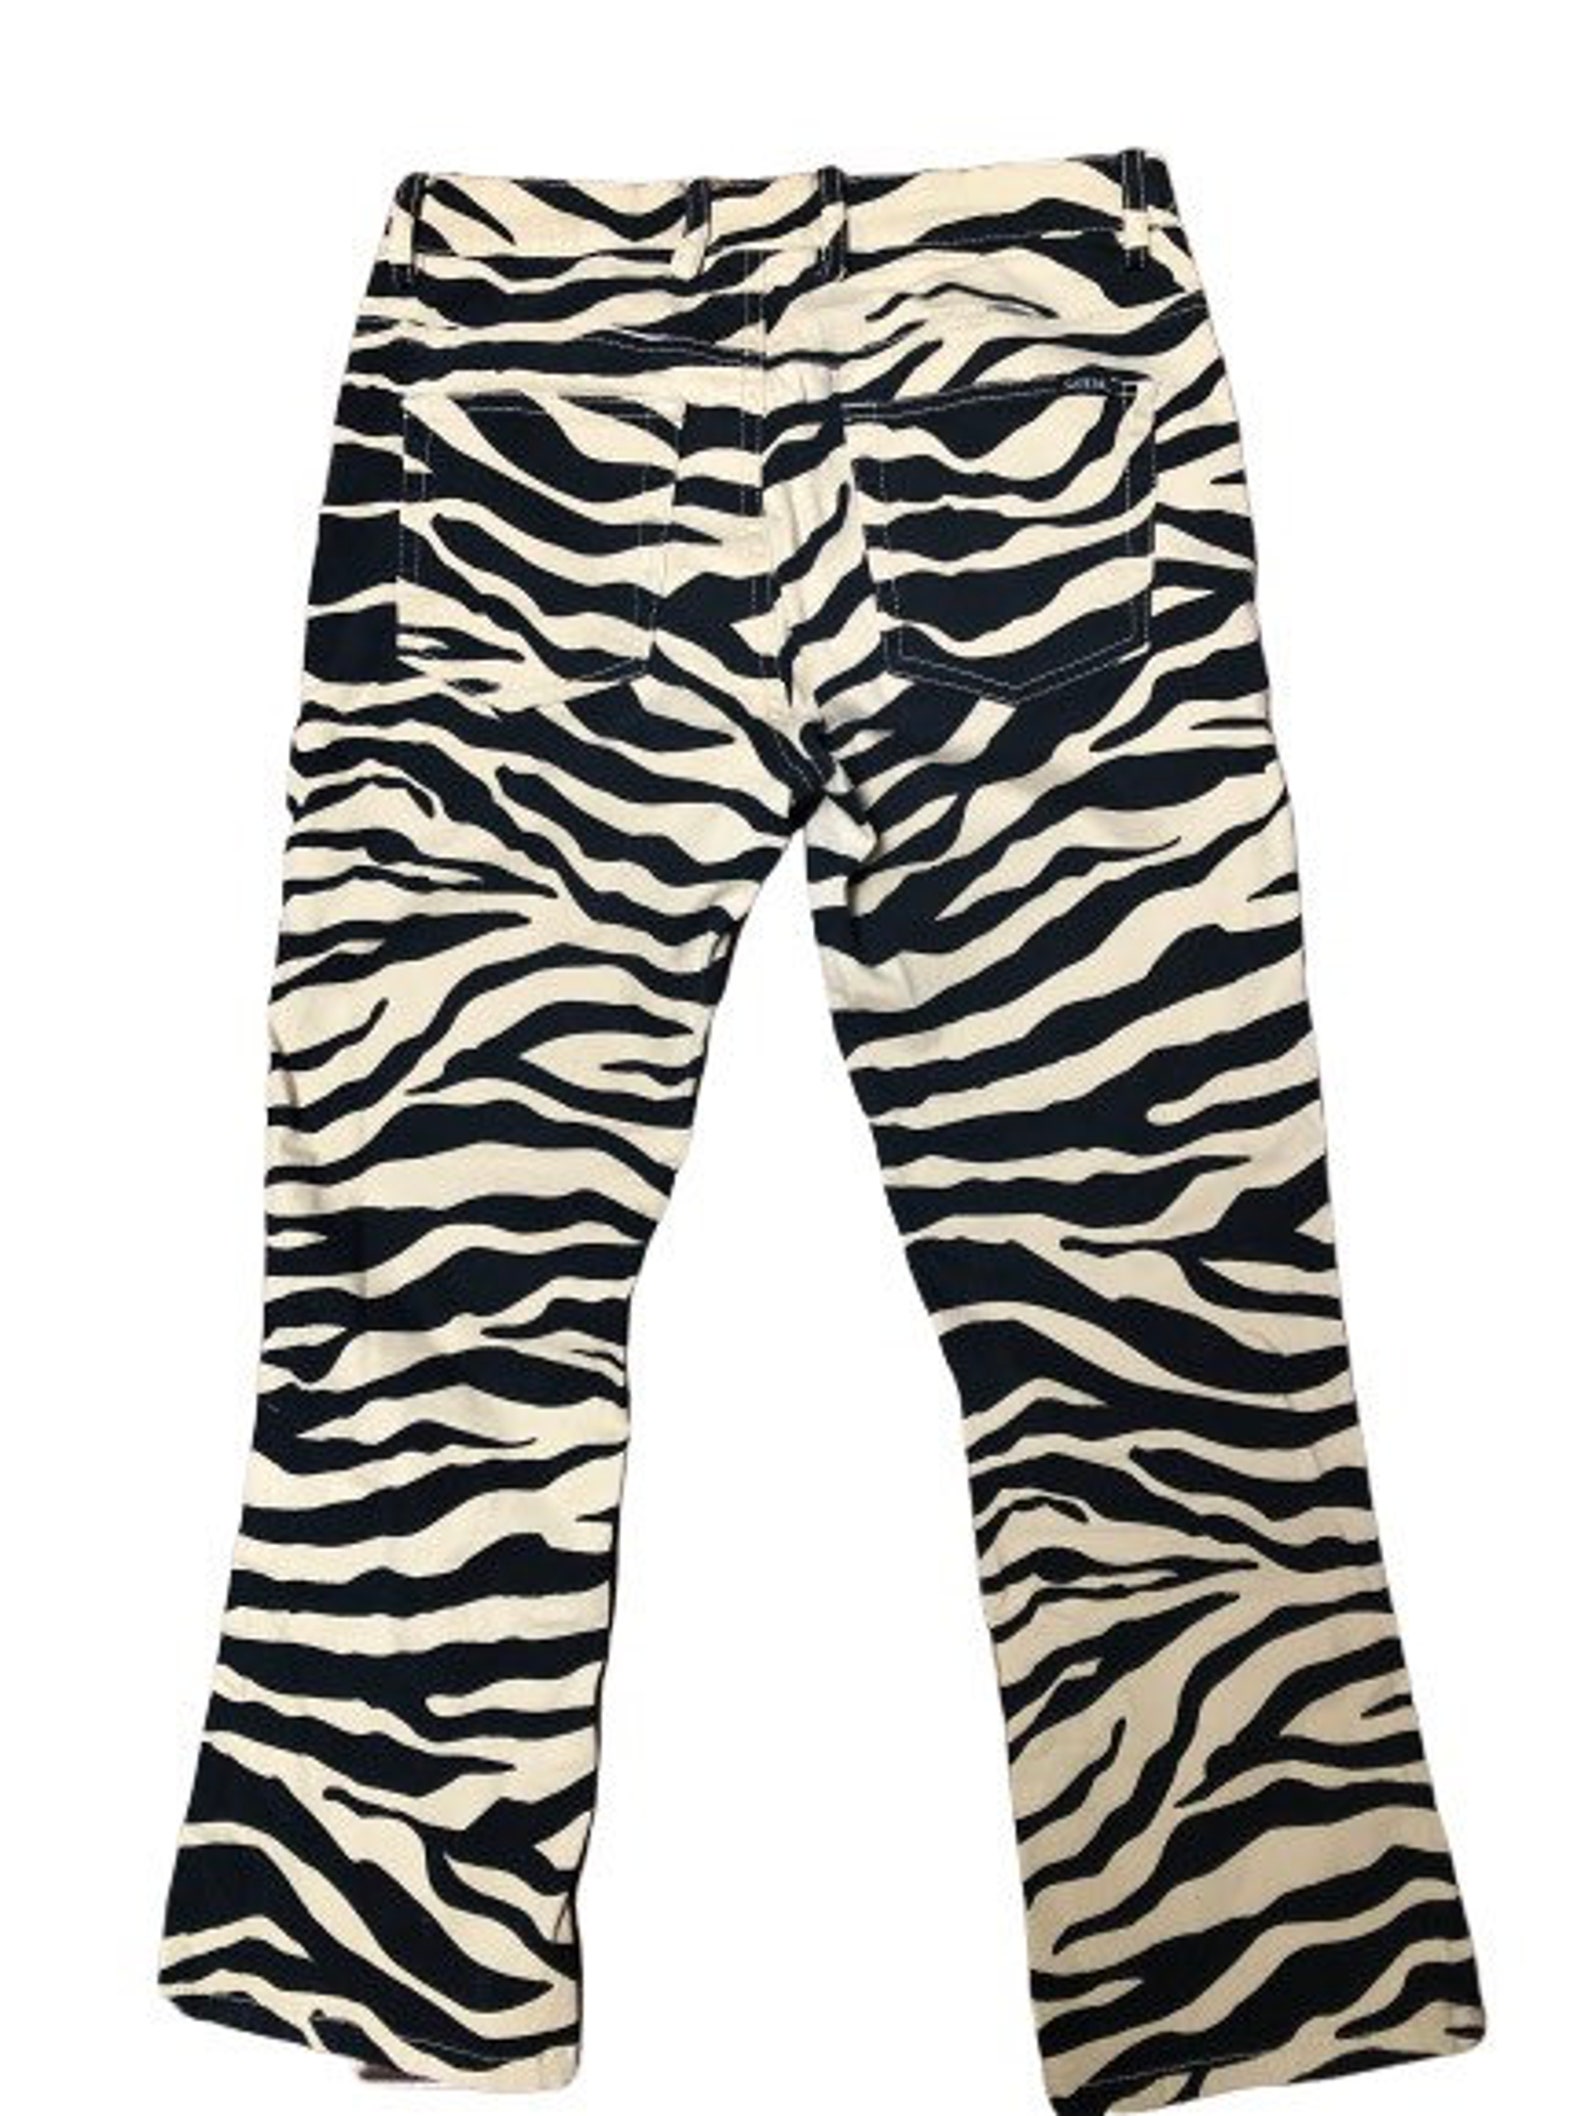 Vintage Guess Tiger Print Pants 80s Zebra Print Cropped Pants | Etsy